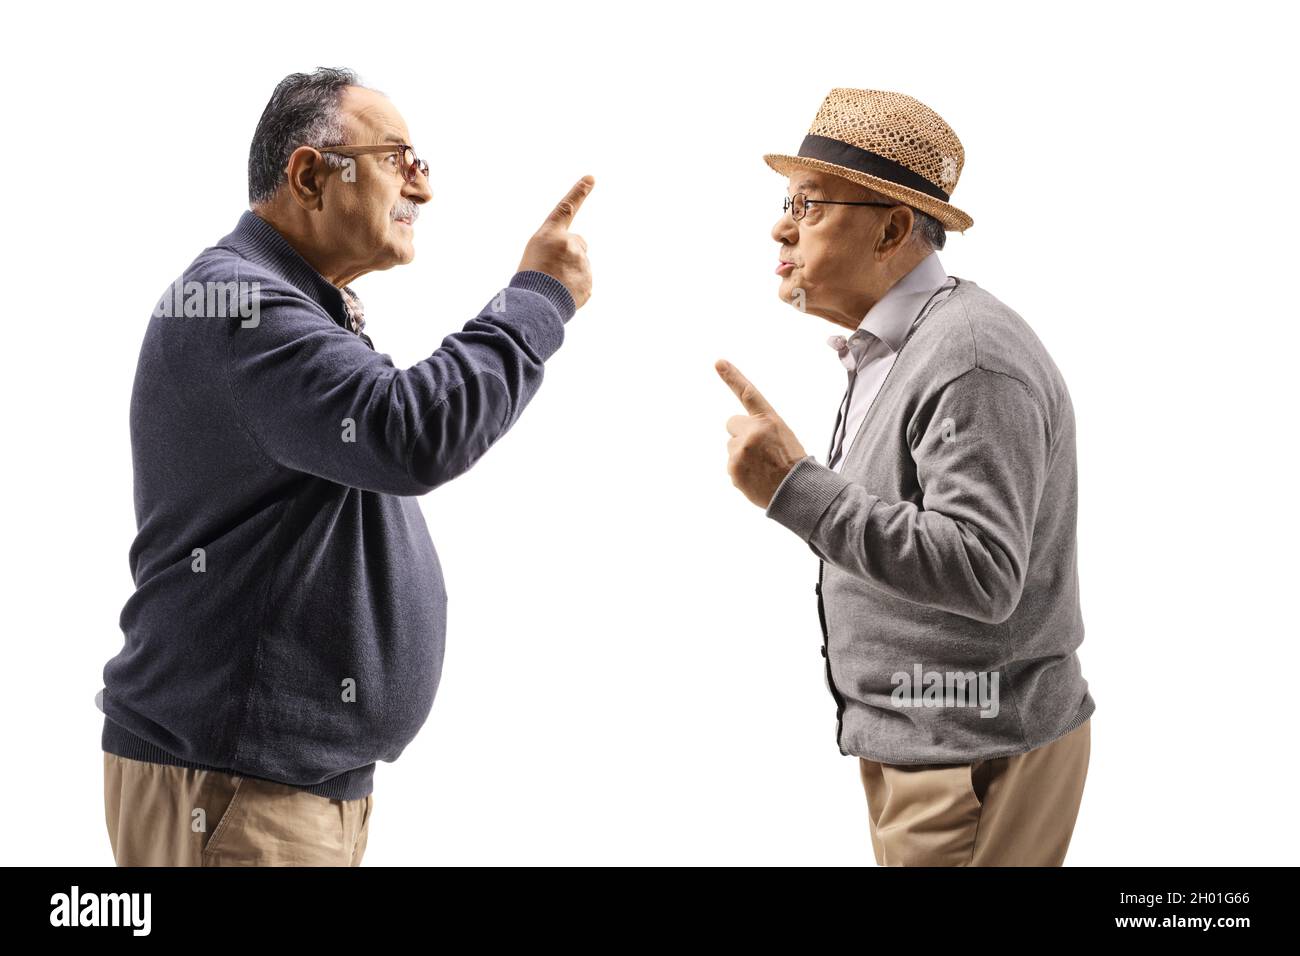 Foto de perfil de dos hombres maduros enojados con un argumento aislado sobre fondo blanco Foto de stock